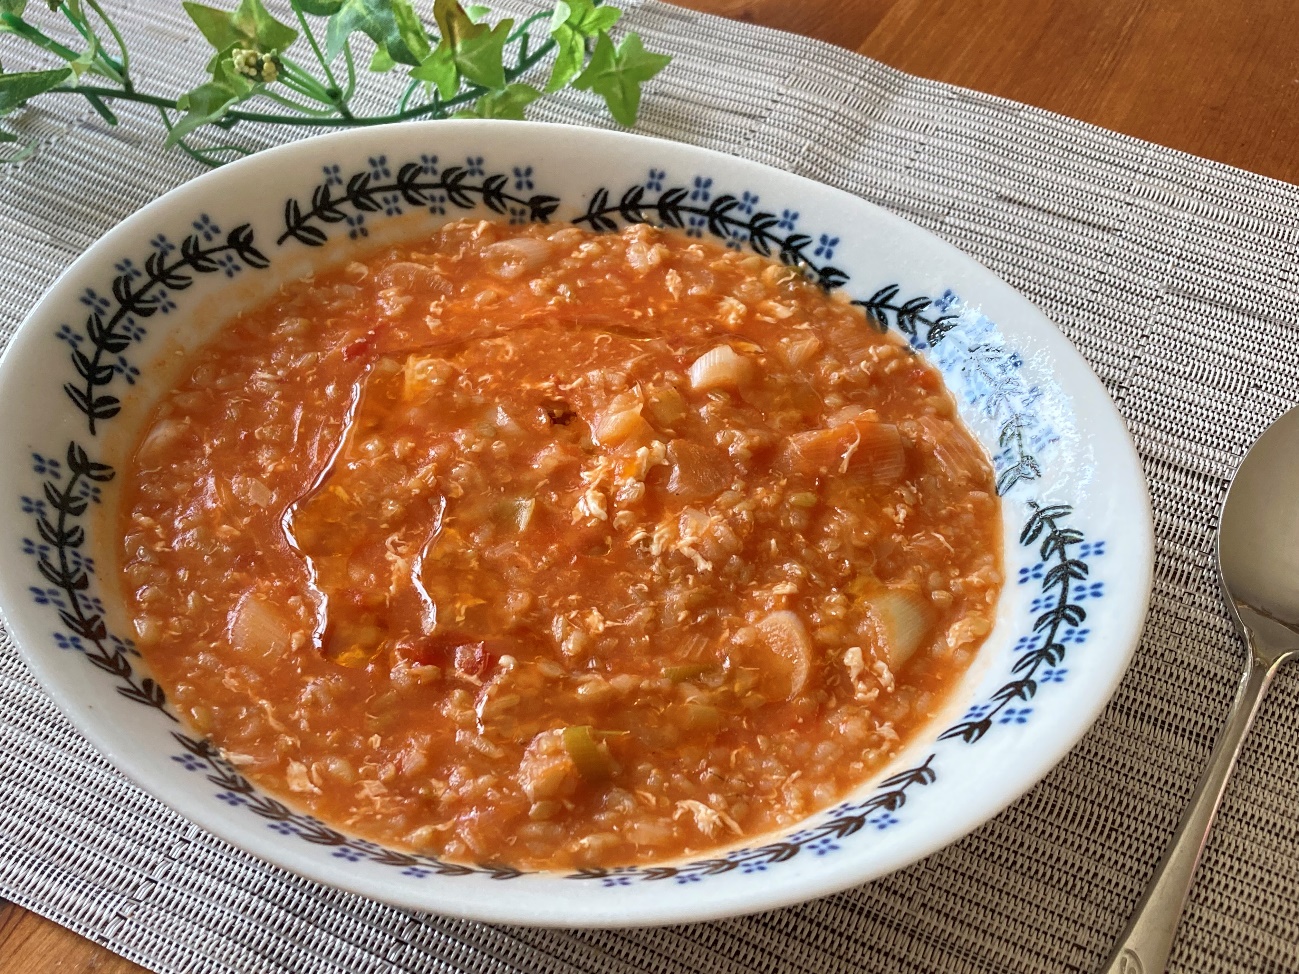 完成した業務スーパーの玄米トマトリゾットで作ったトマトの中華粥